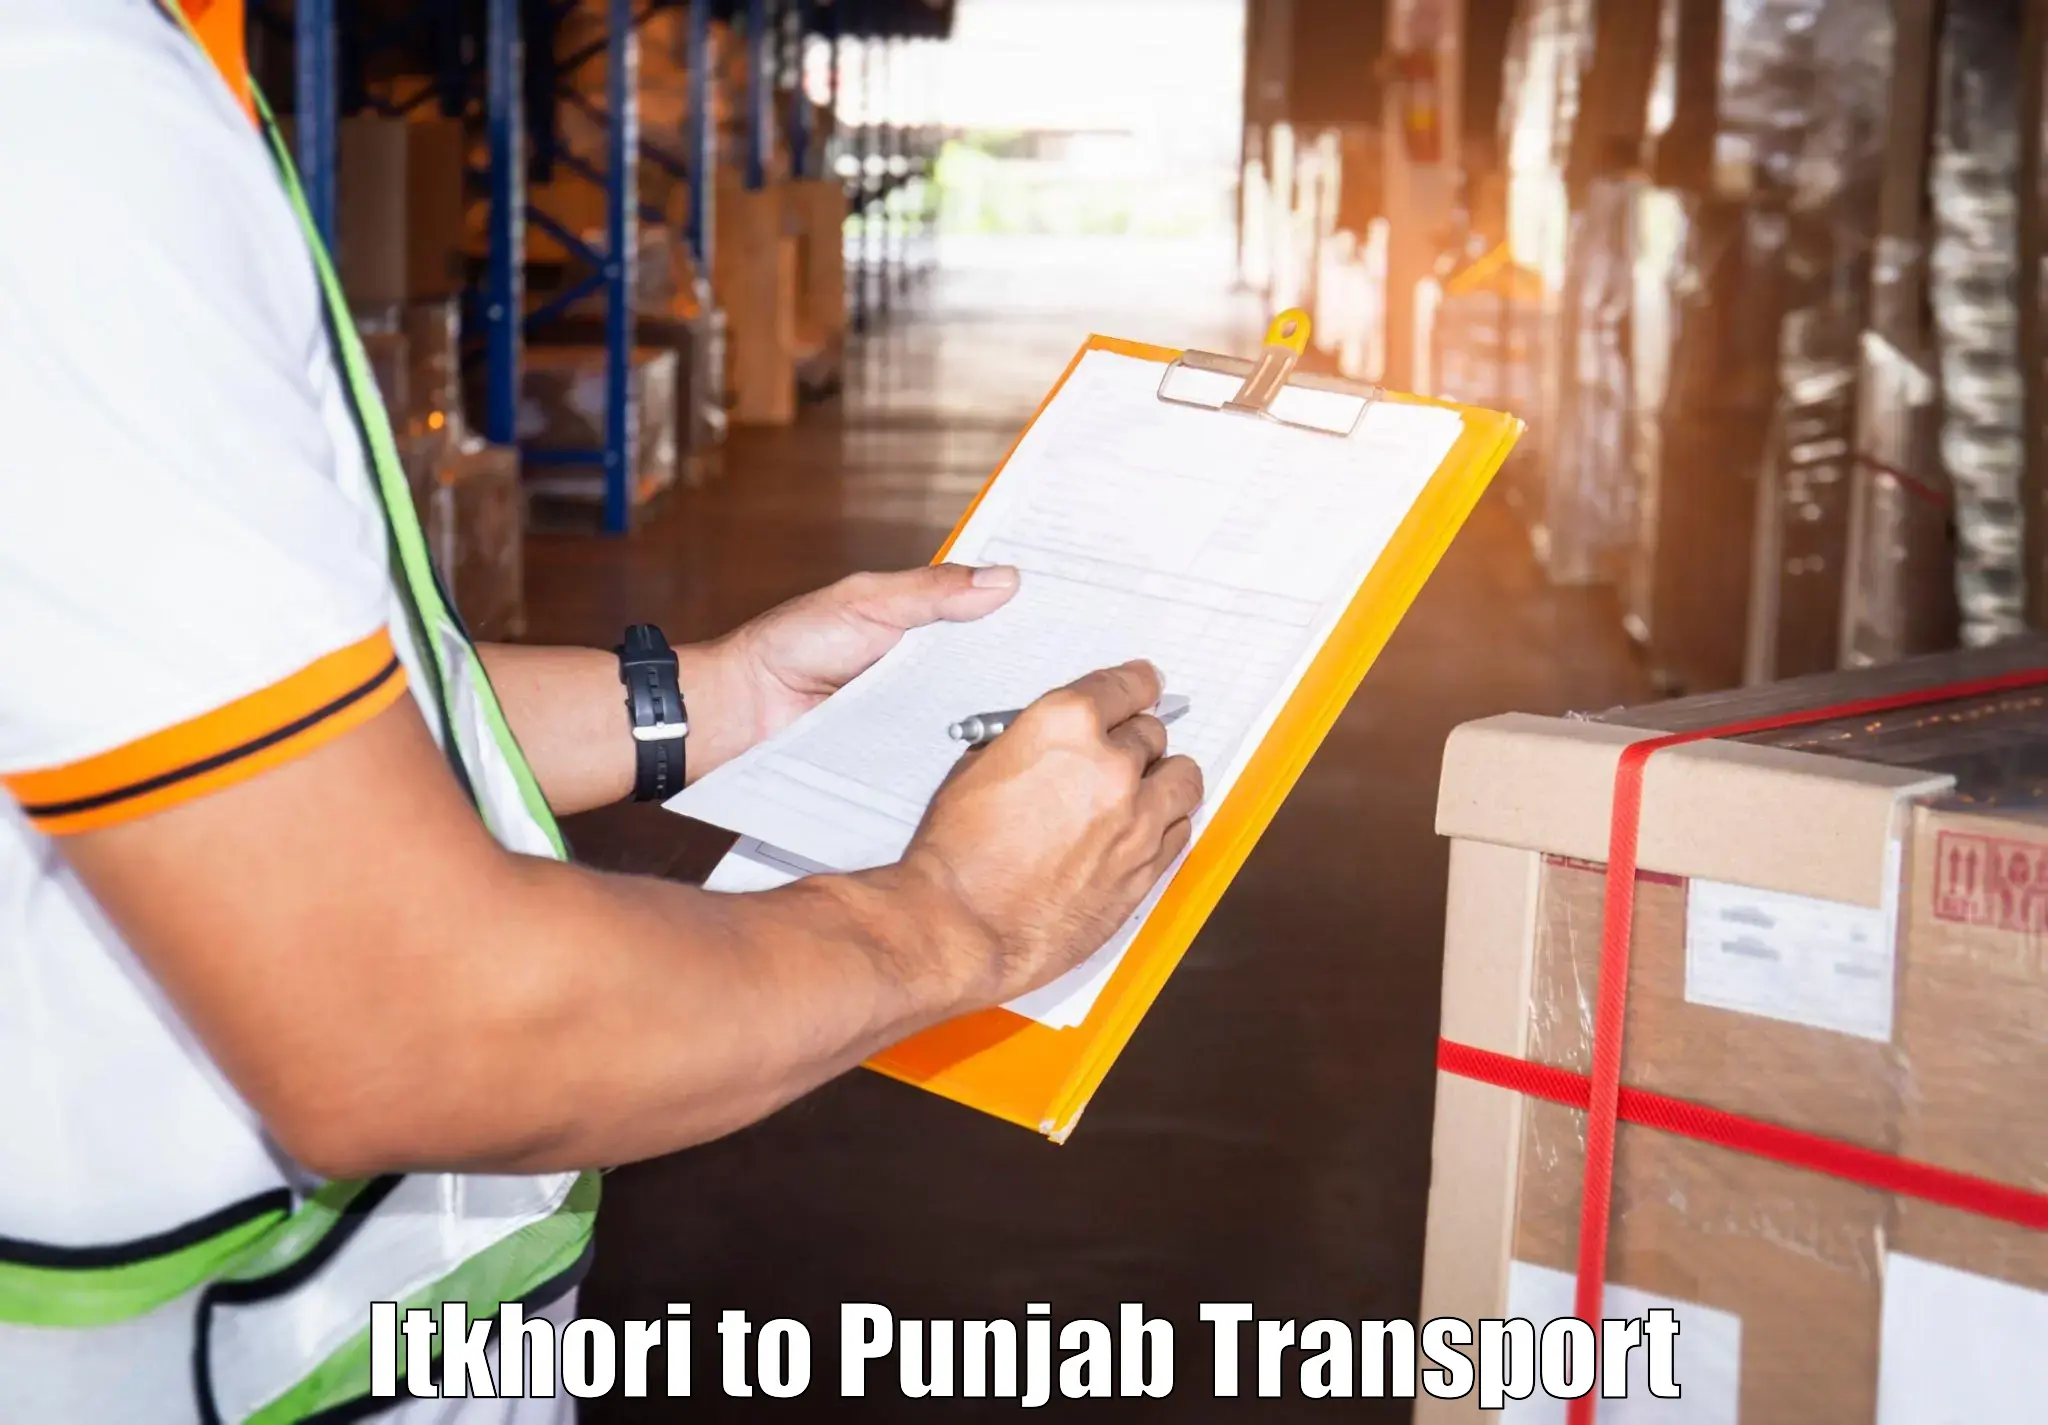 Furniture transport service Itkhori to Amritsar